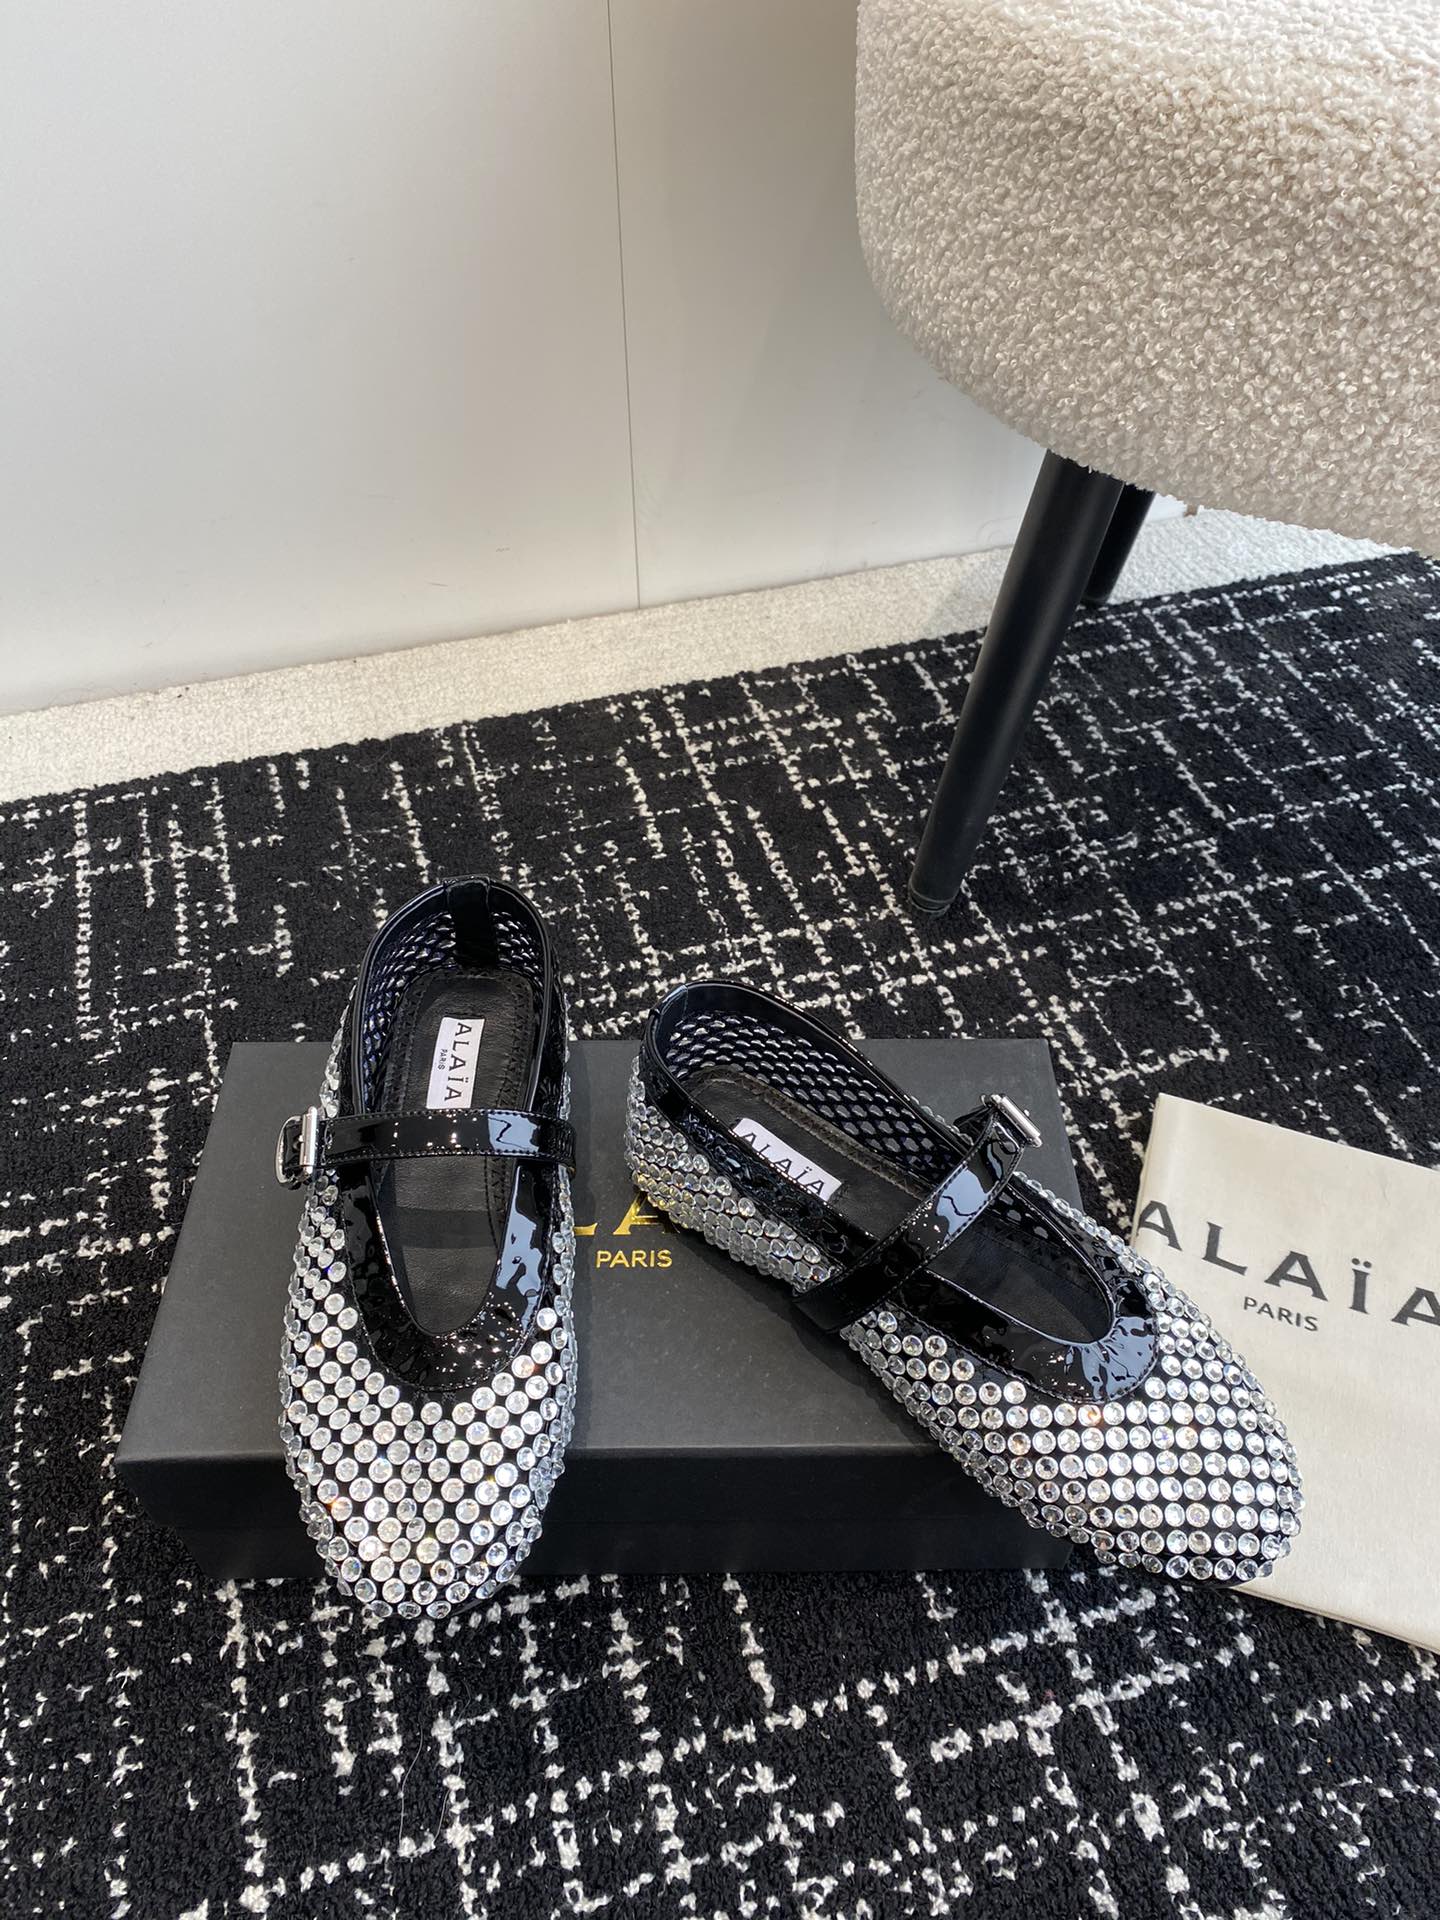 Alaia经典芭蕾舞鞋新品以芭蕾的灵动意韵融于日常以现代笔触刻画舞鞋经典轮廓！黑色钻饰皮质款芭蕾舞鞋从经